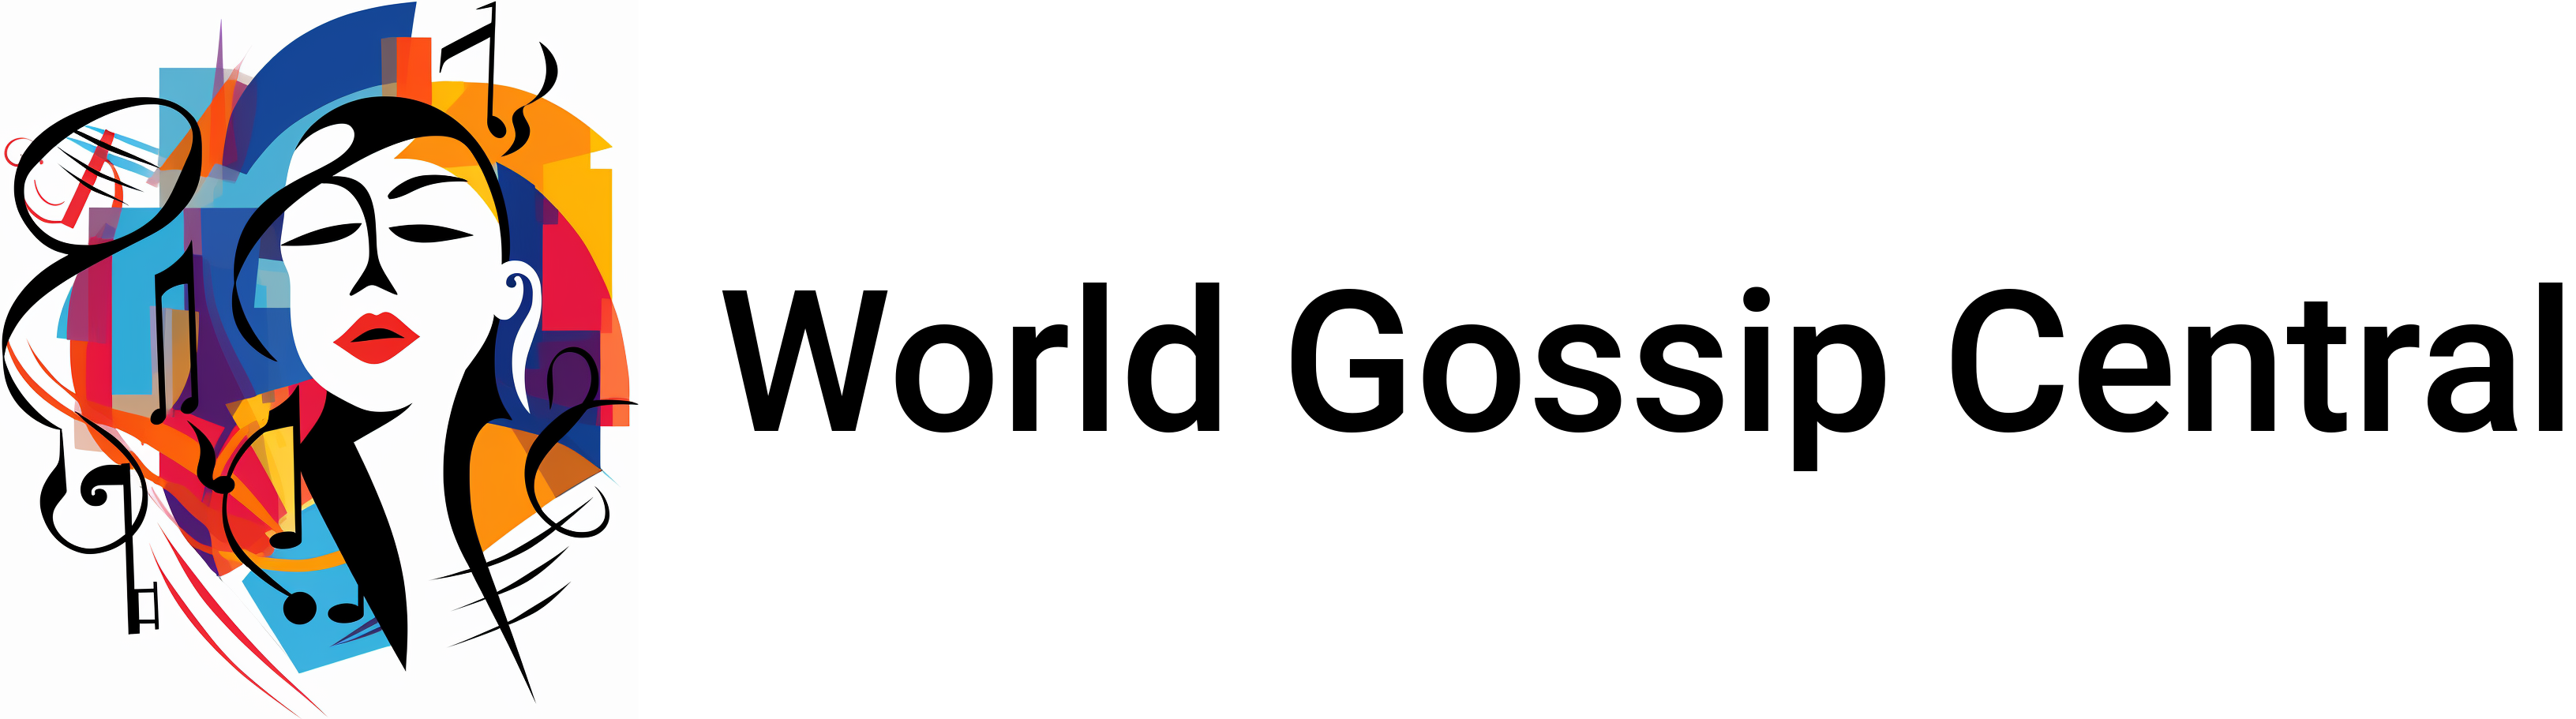 World Gossip Central